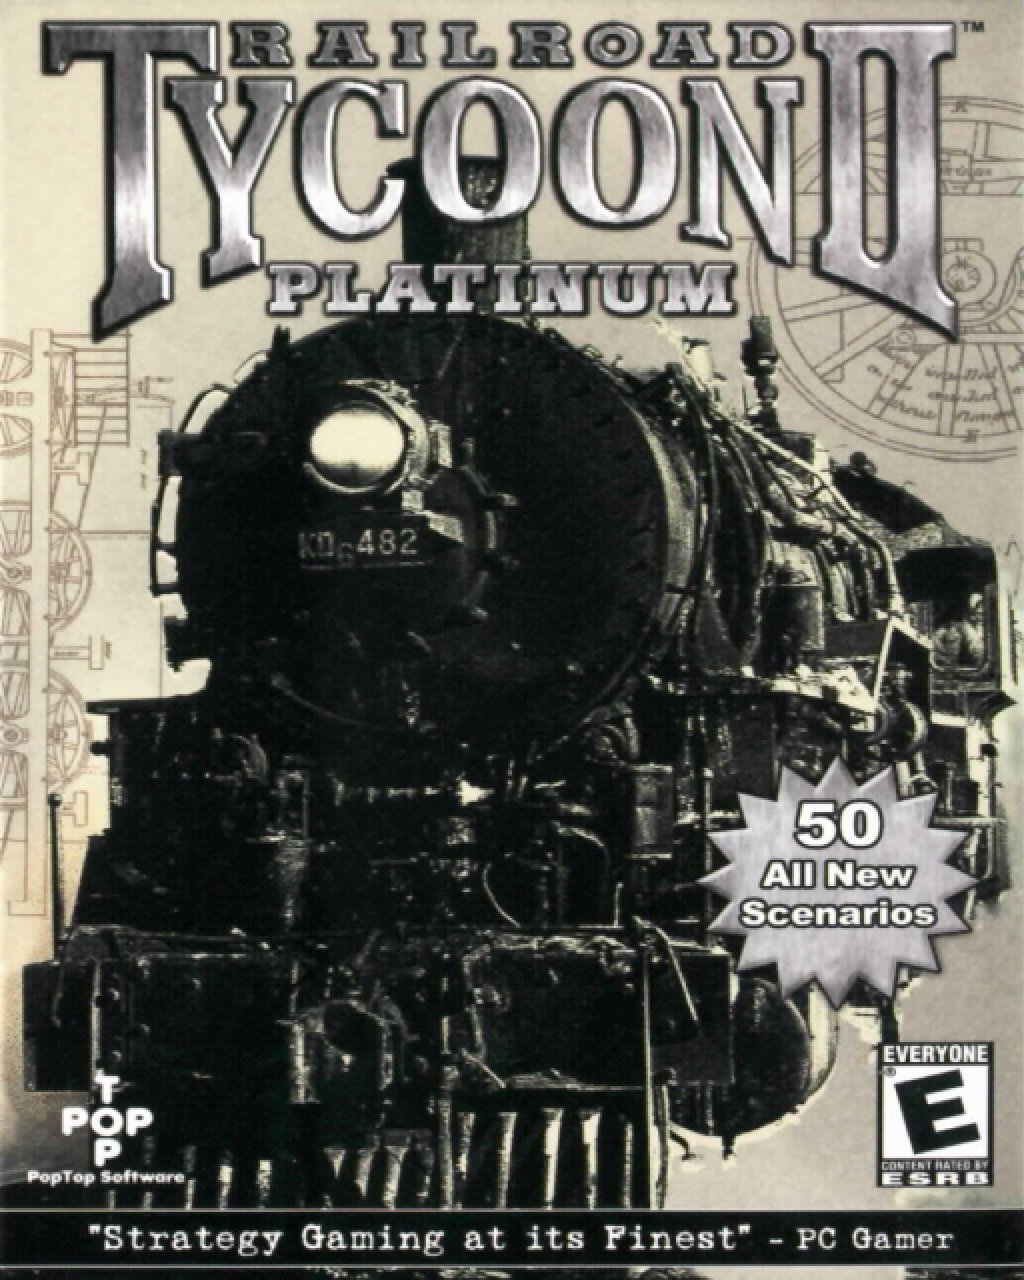 Railroad Tycoon II Platinum